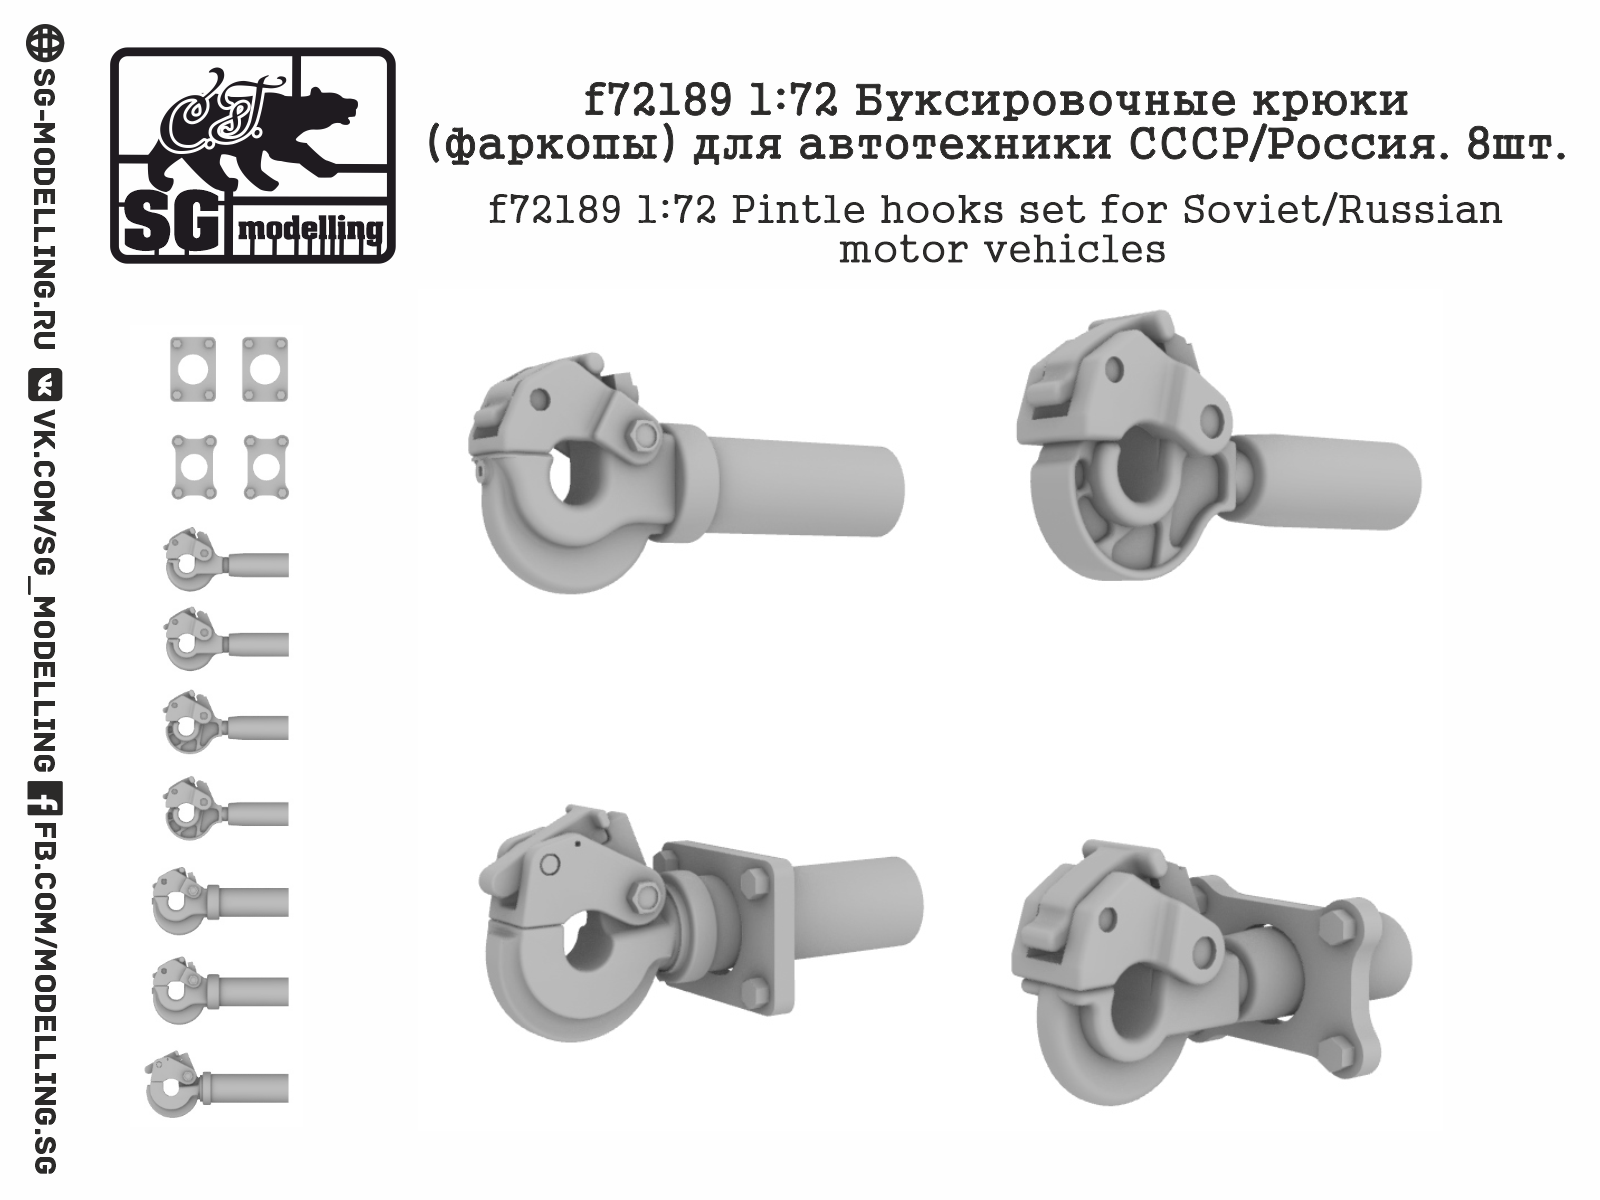 Soviet / Russian vehicle pintle hooks